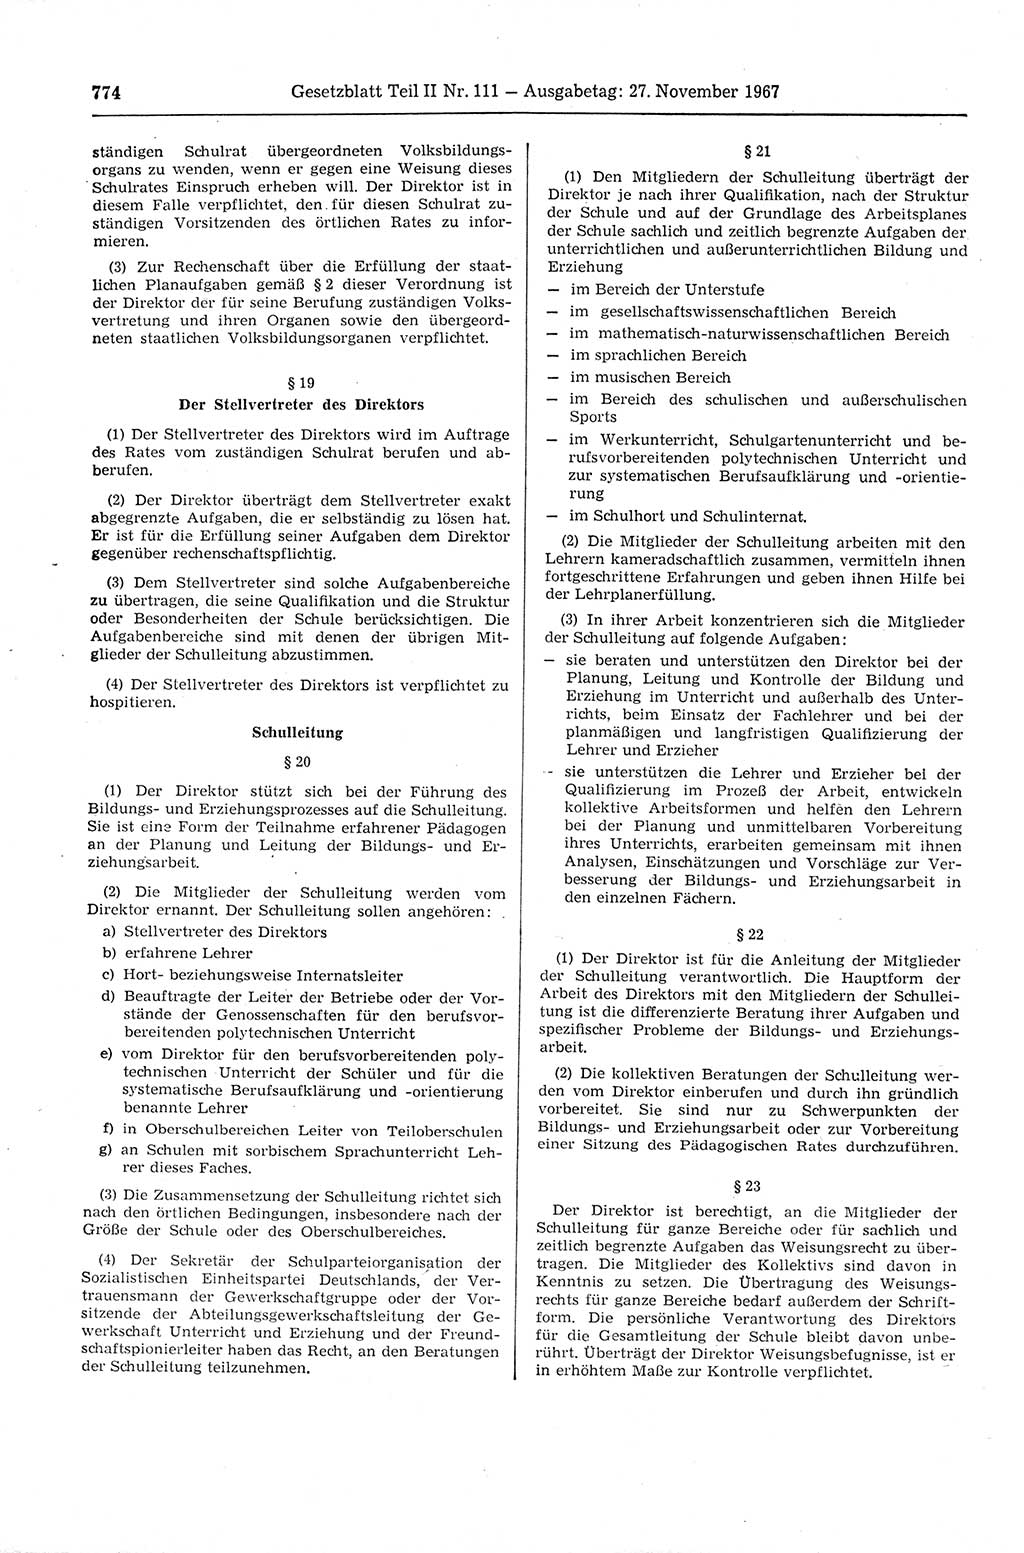 Gesetzblatt (GBl.) der Deutschen Demokratischen Republik (DDR) Teil ⅠⅠ 1967, Seite 774 (GBl. DDR ⅠⅠ 1967, S. 774)